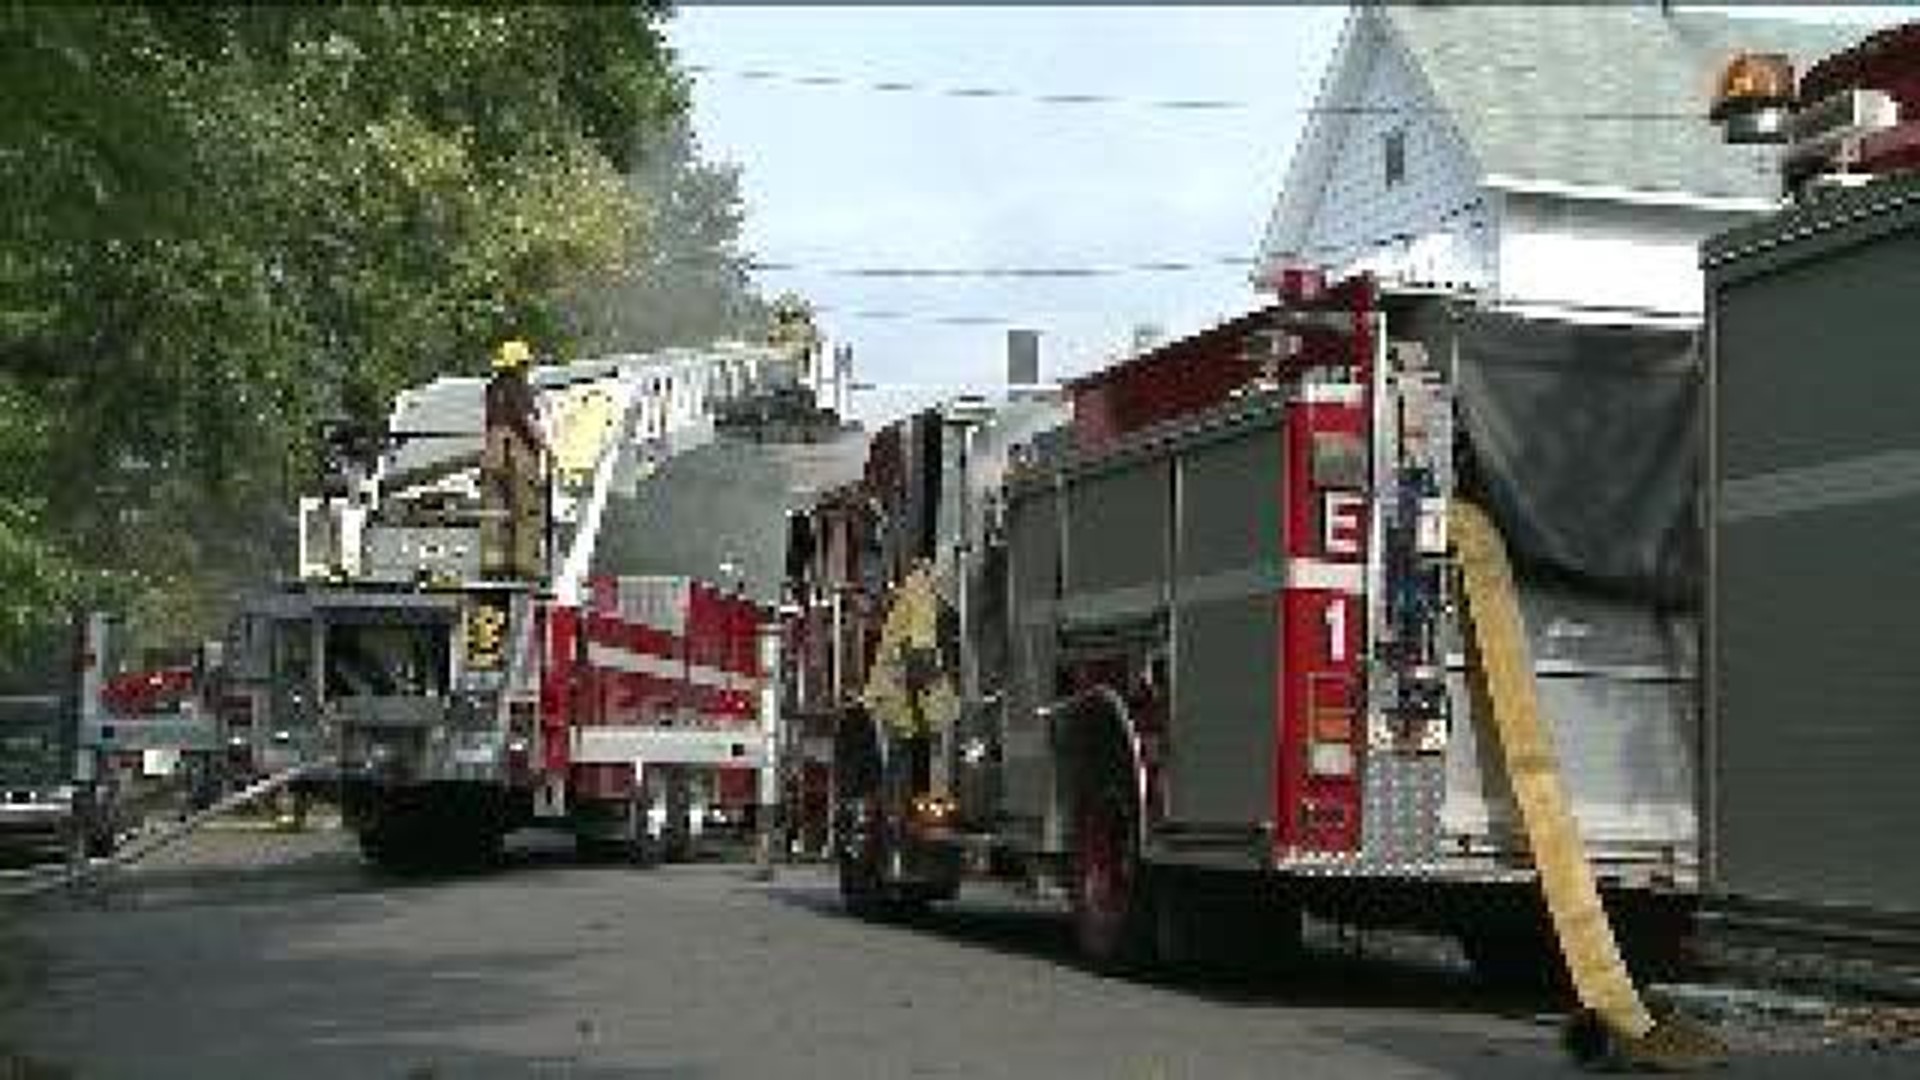 Fire Wrecks Home in Wilkes-Barre